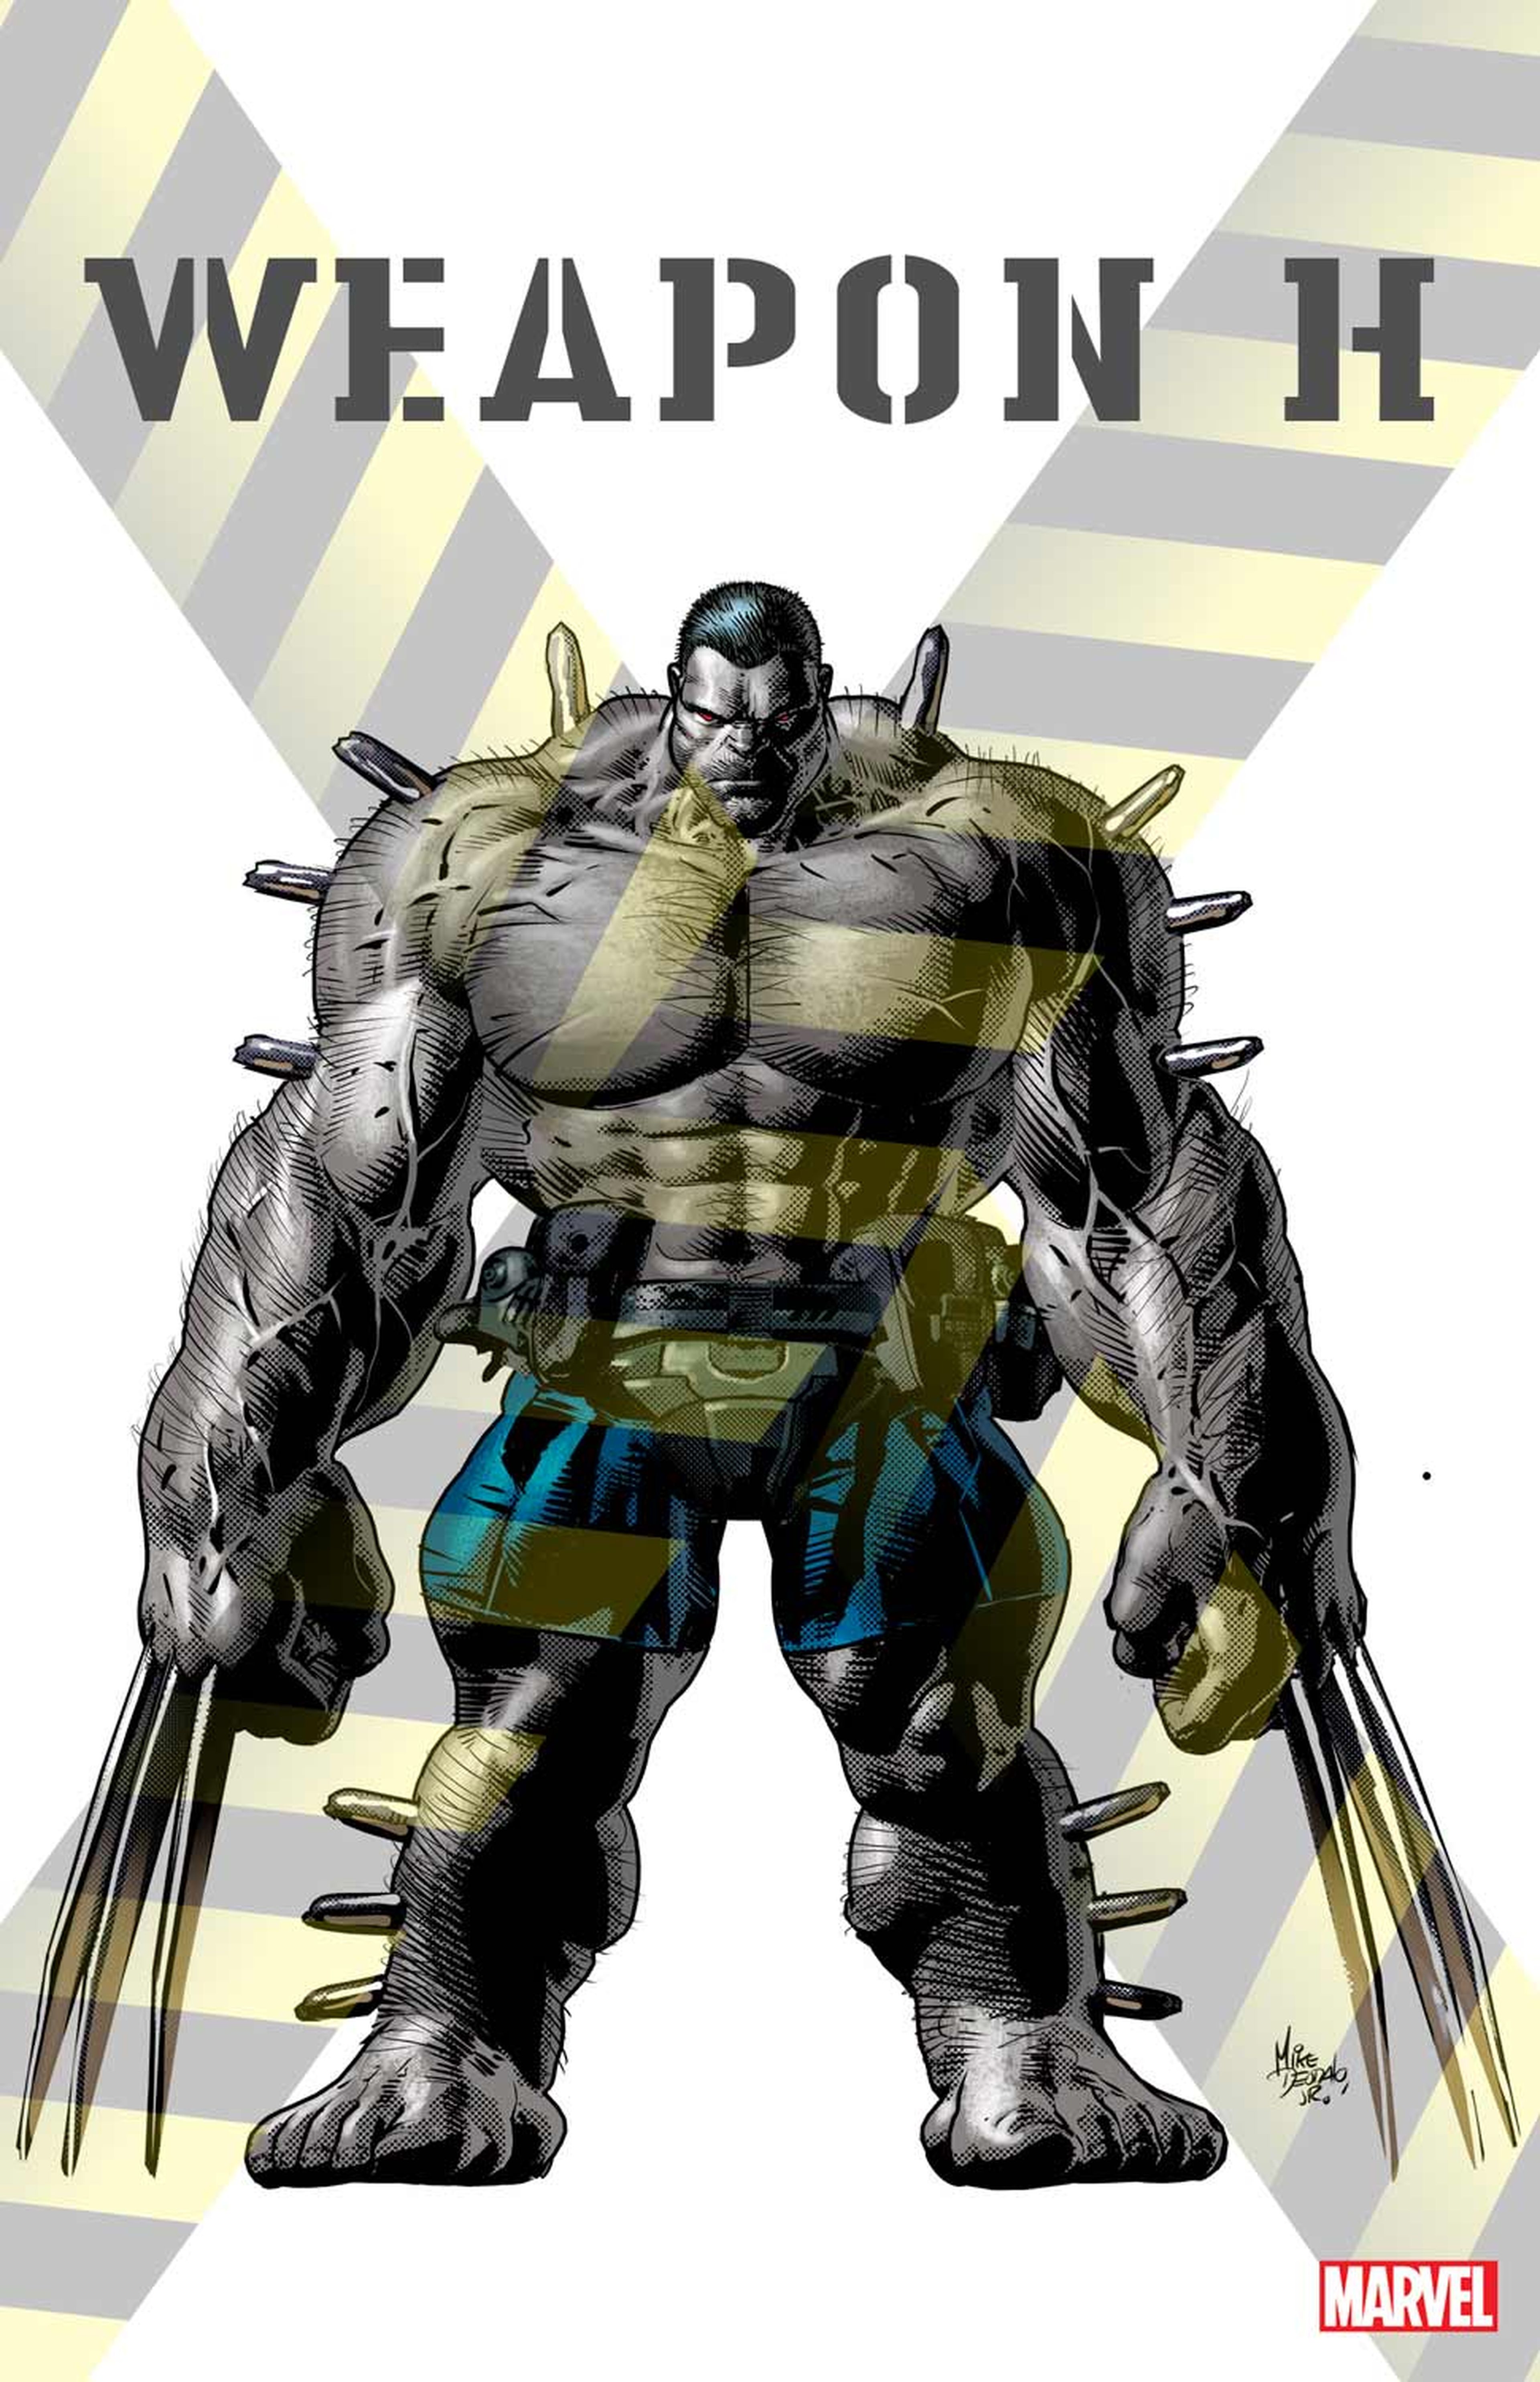 Weapons of Mutant Destruction - Primera imagen del Arma H, un híbrido entre Wolverine y Hulk